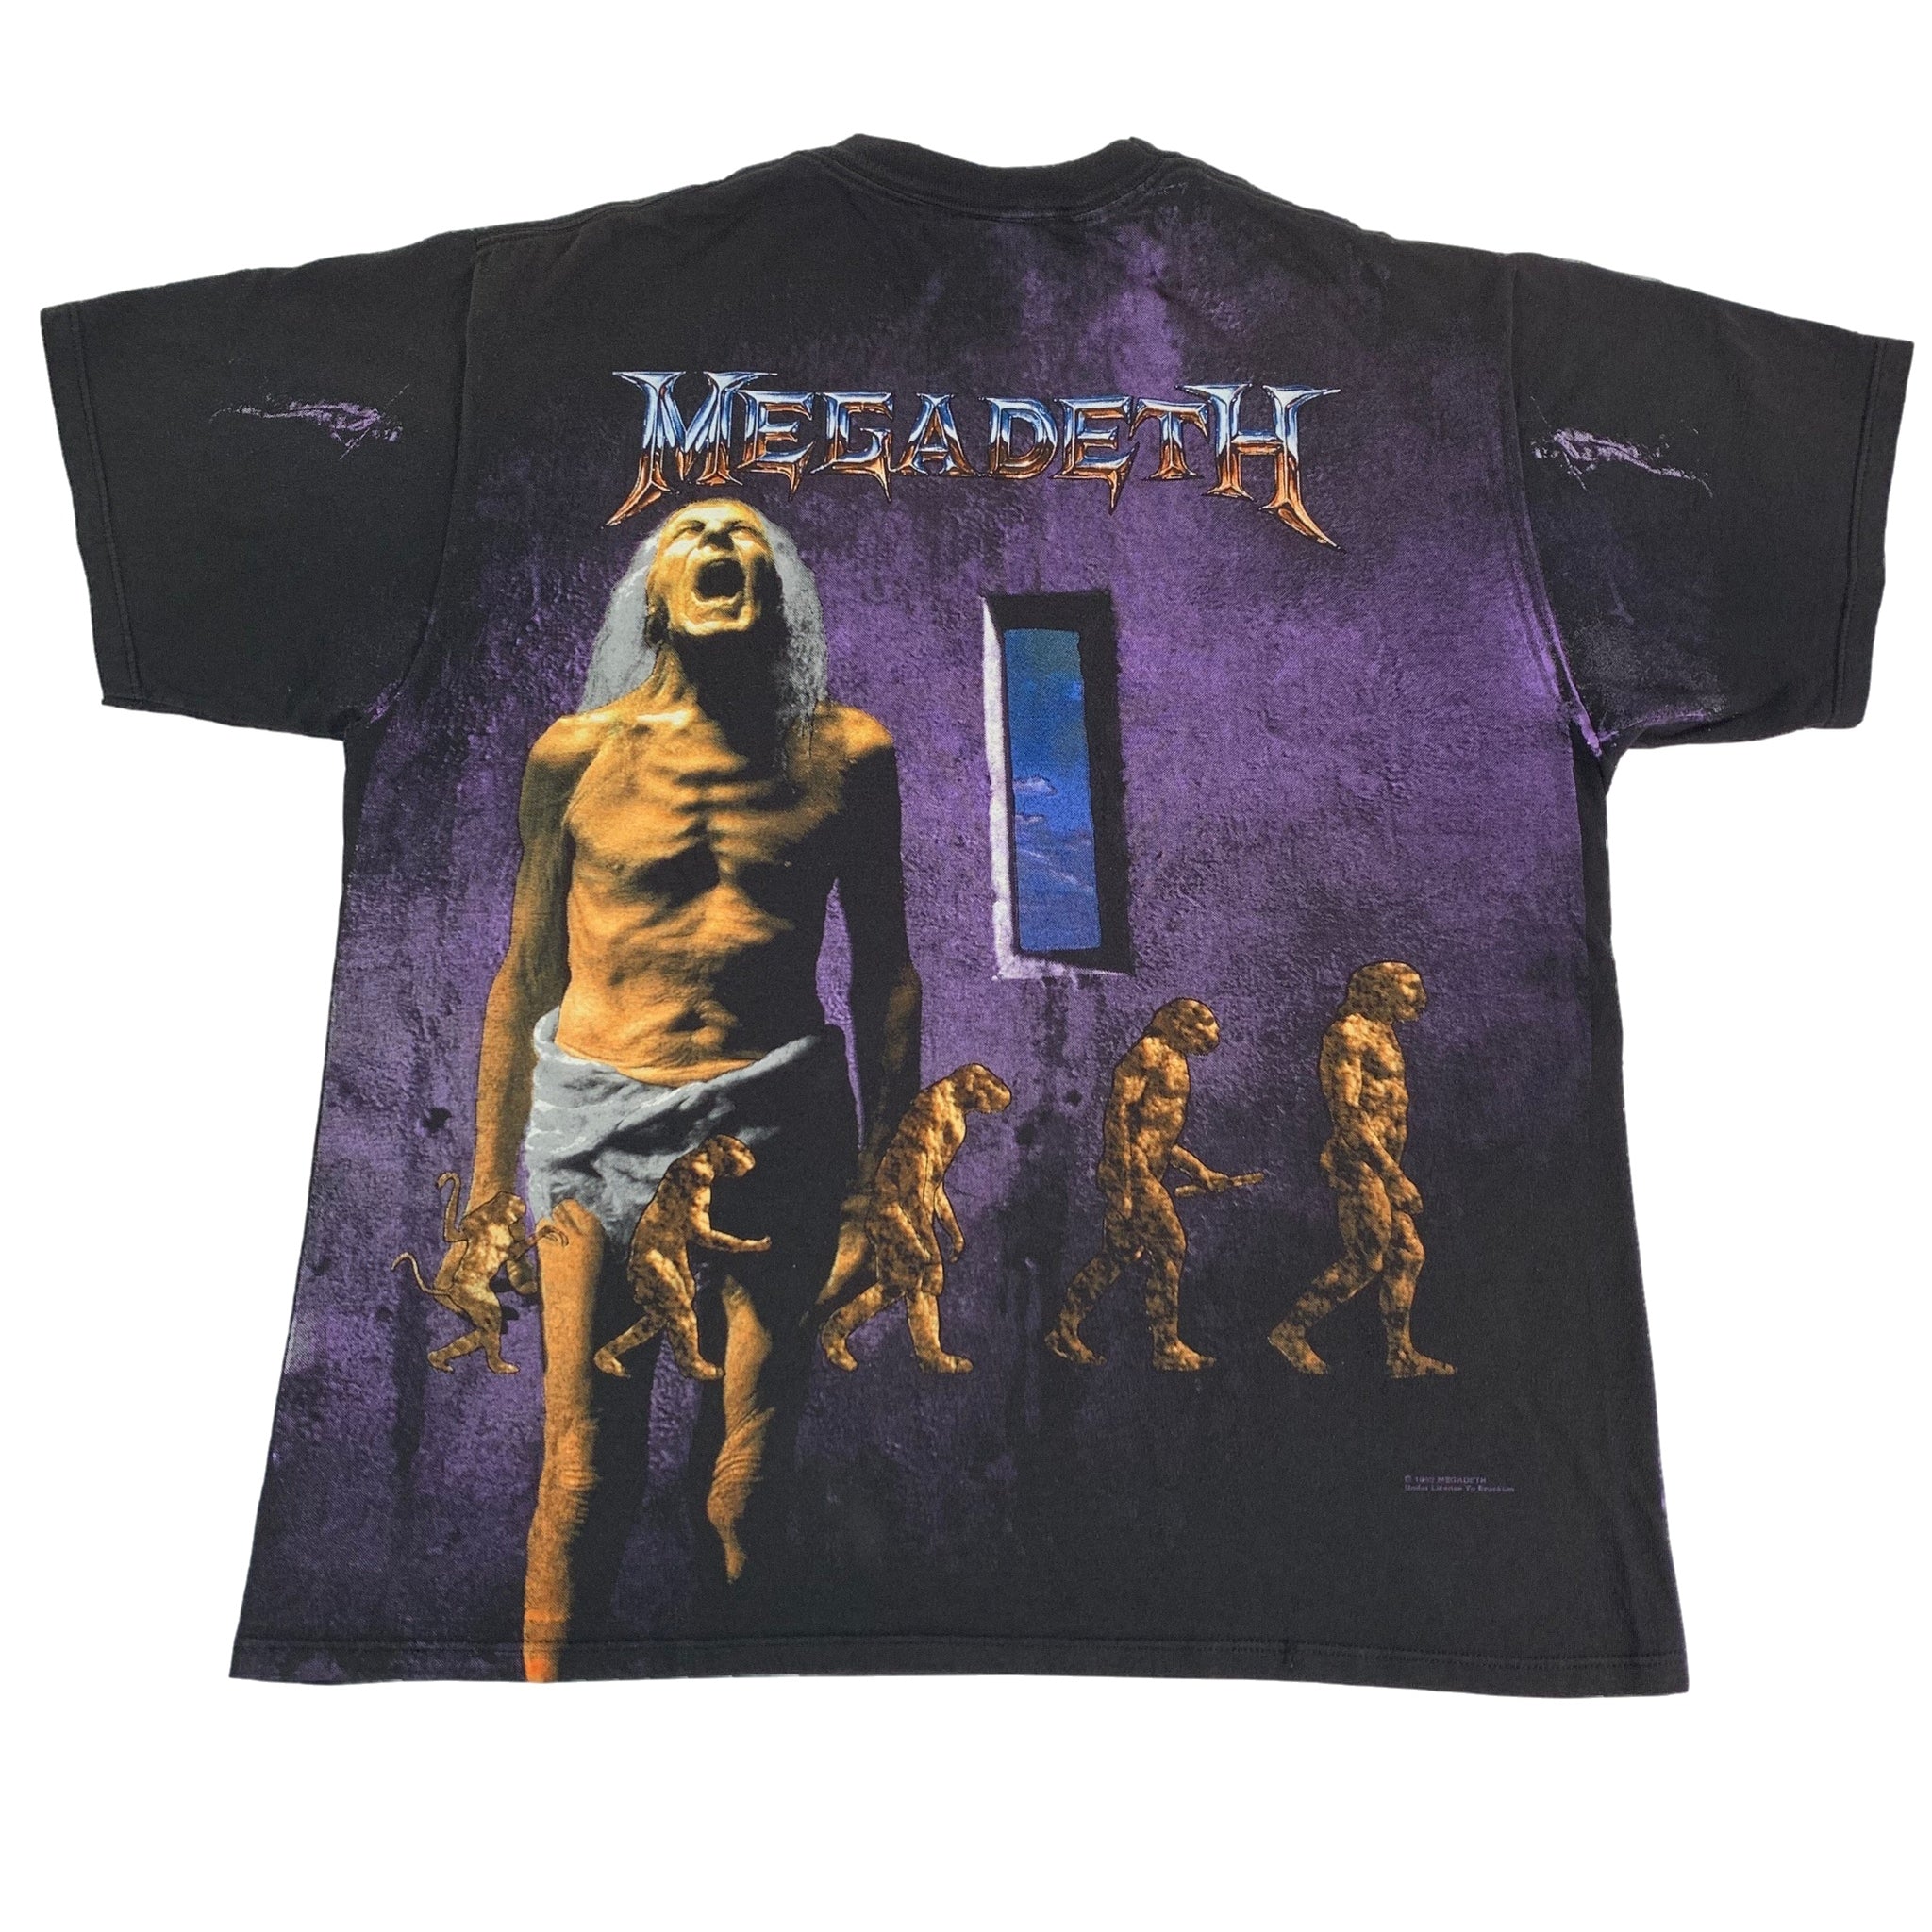 Vintage Megadeth 